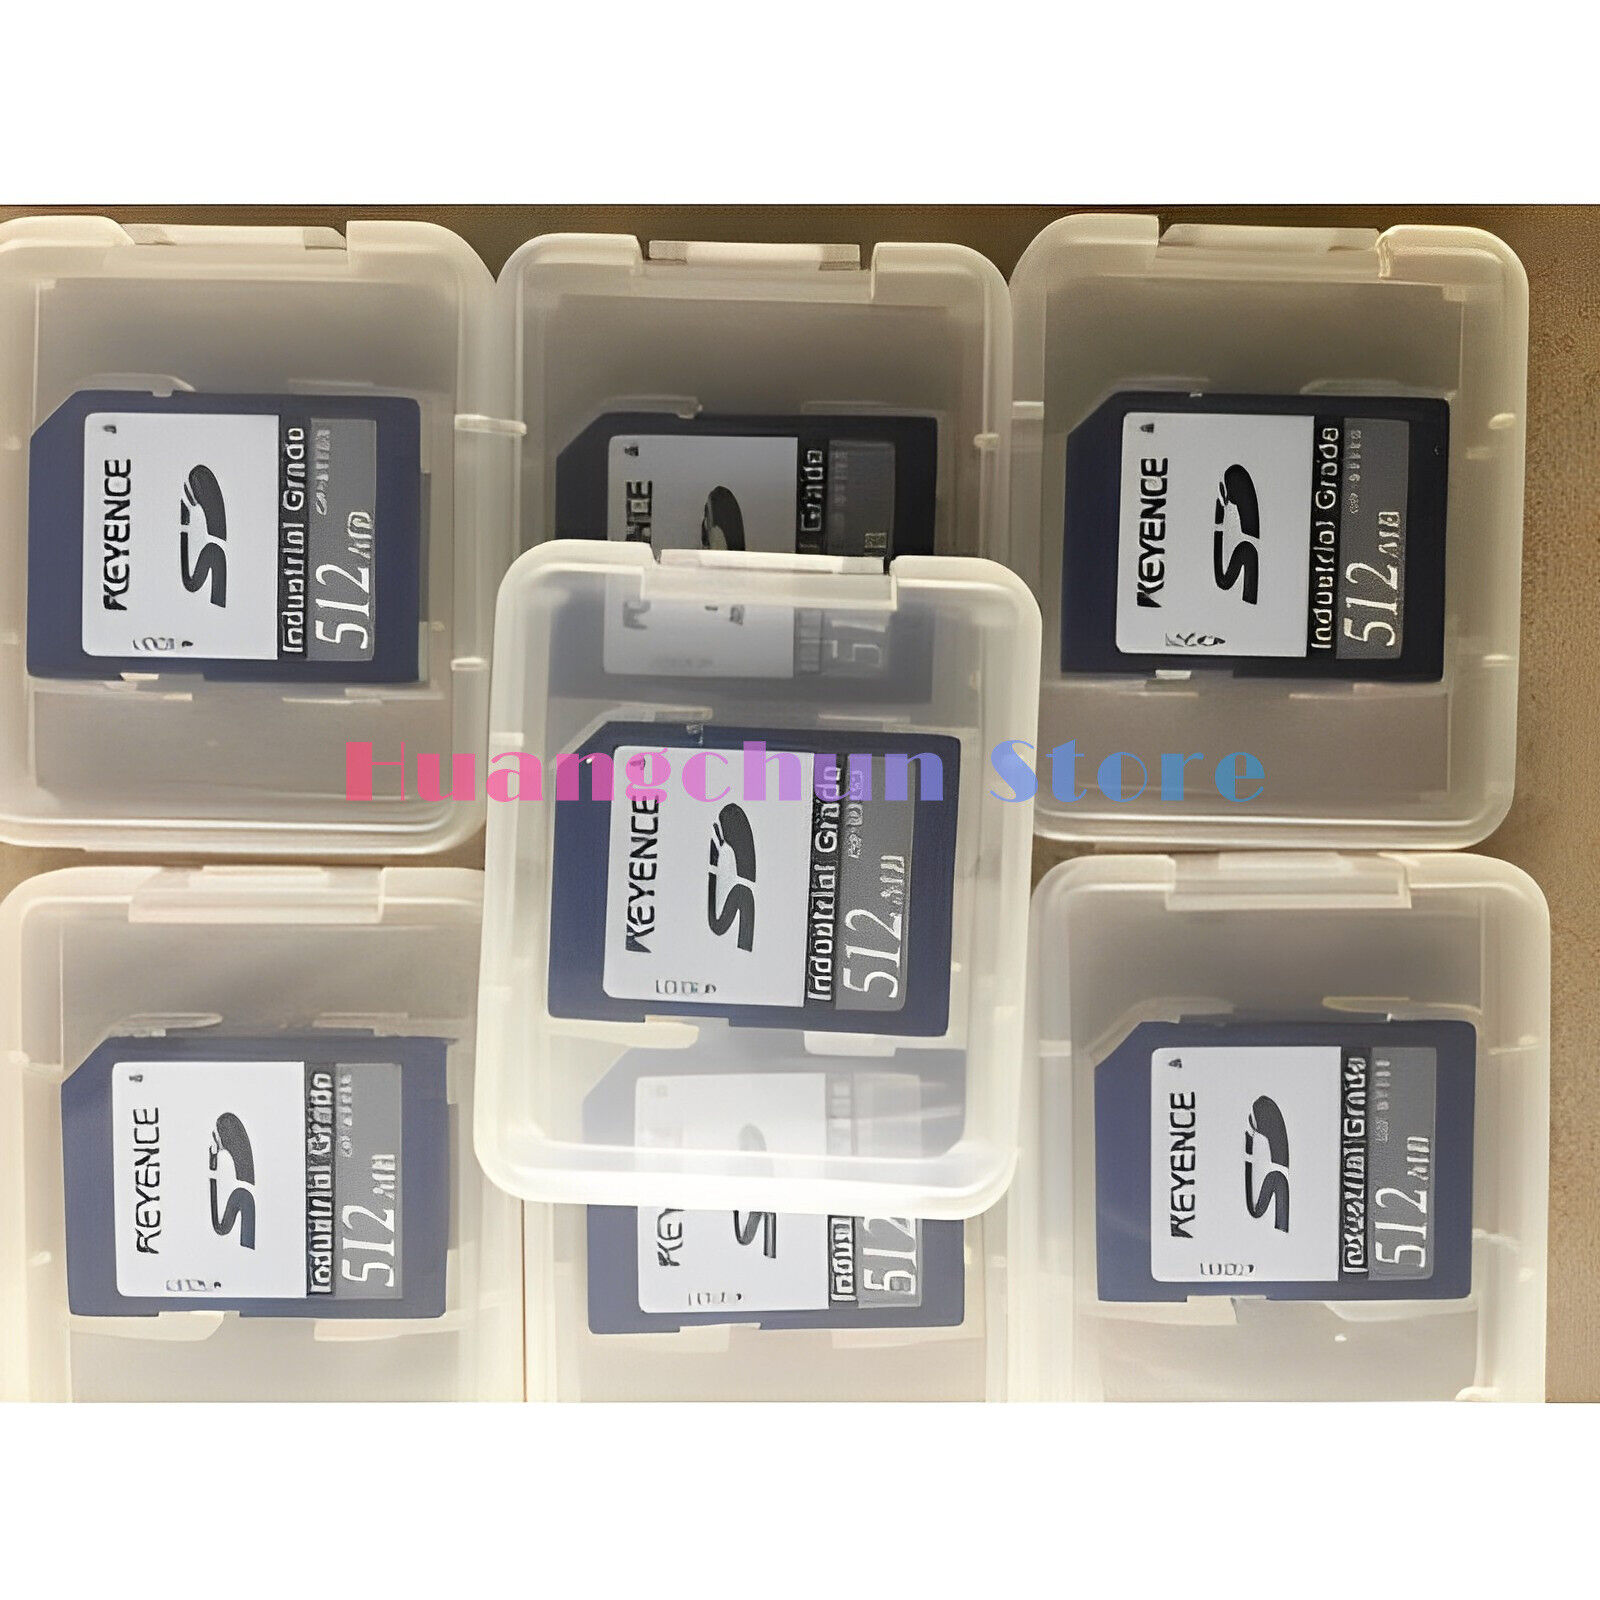 OP-87133 industrial memory card 512MB